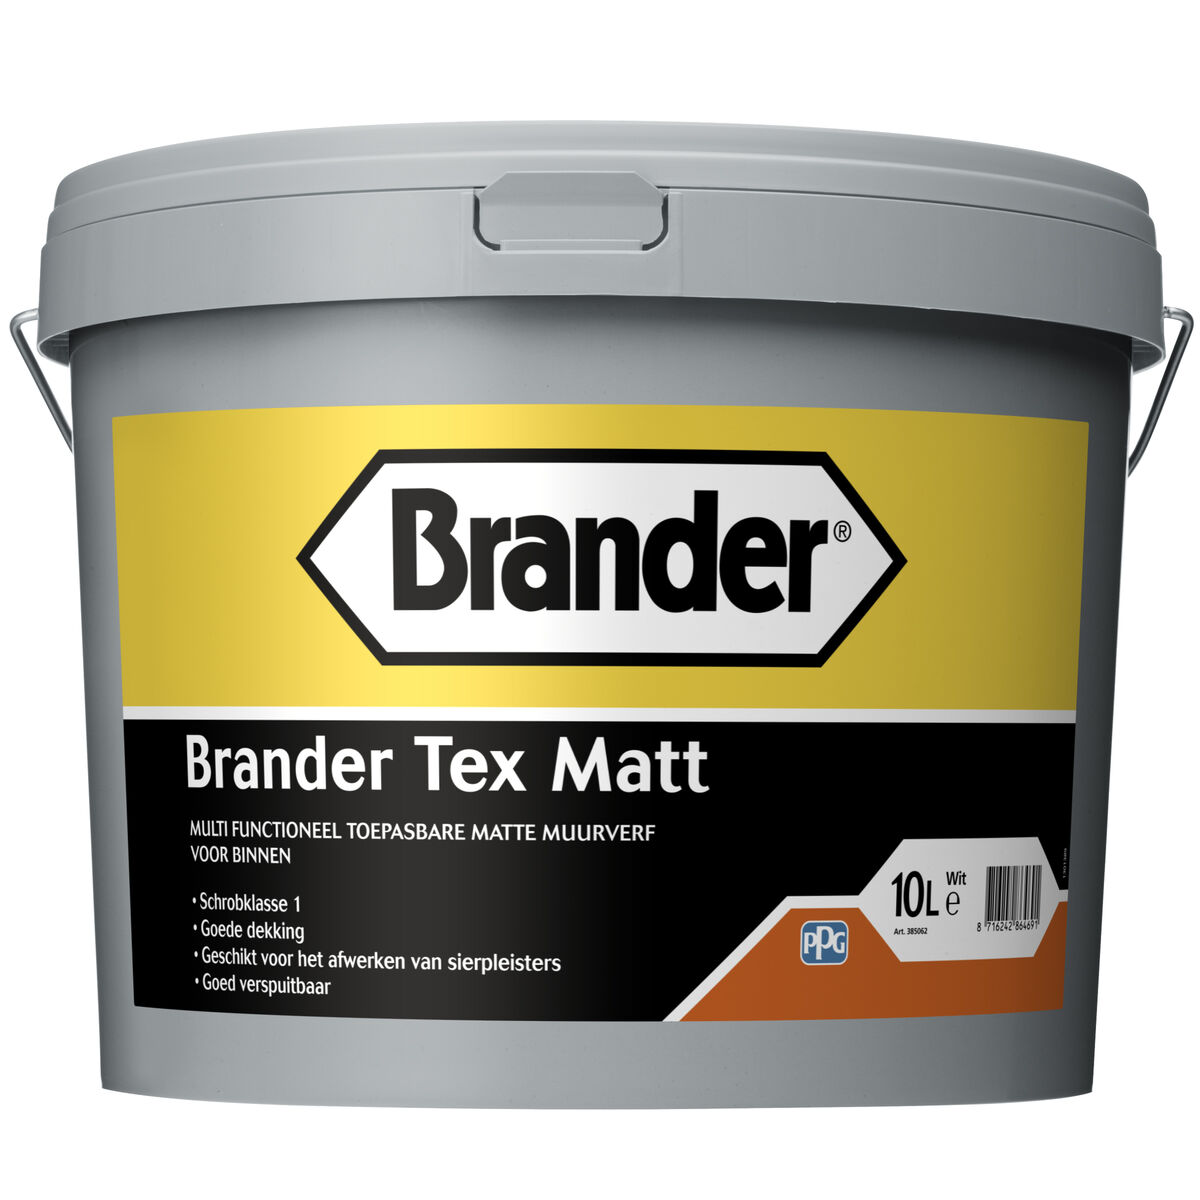 Brander Tex Matt